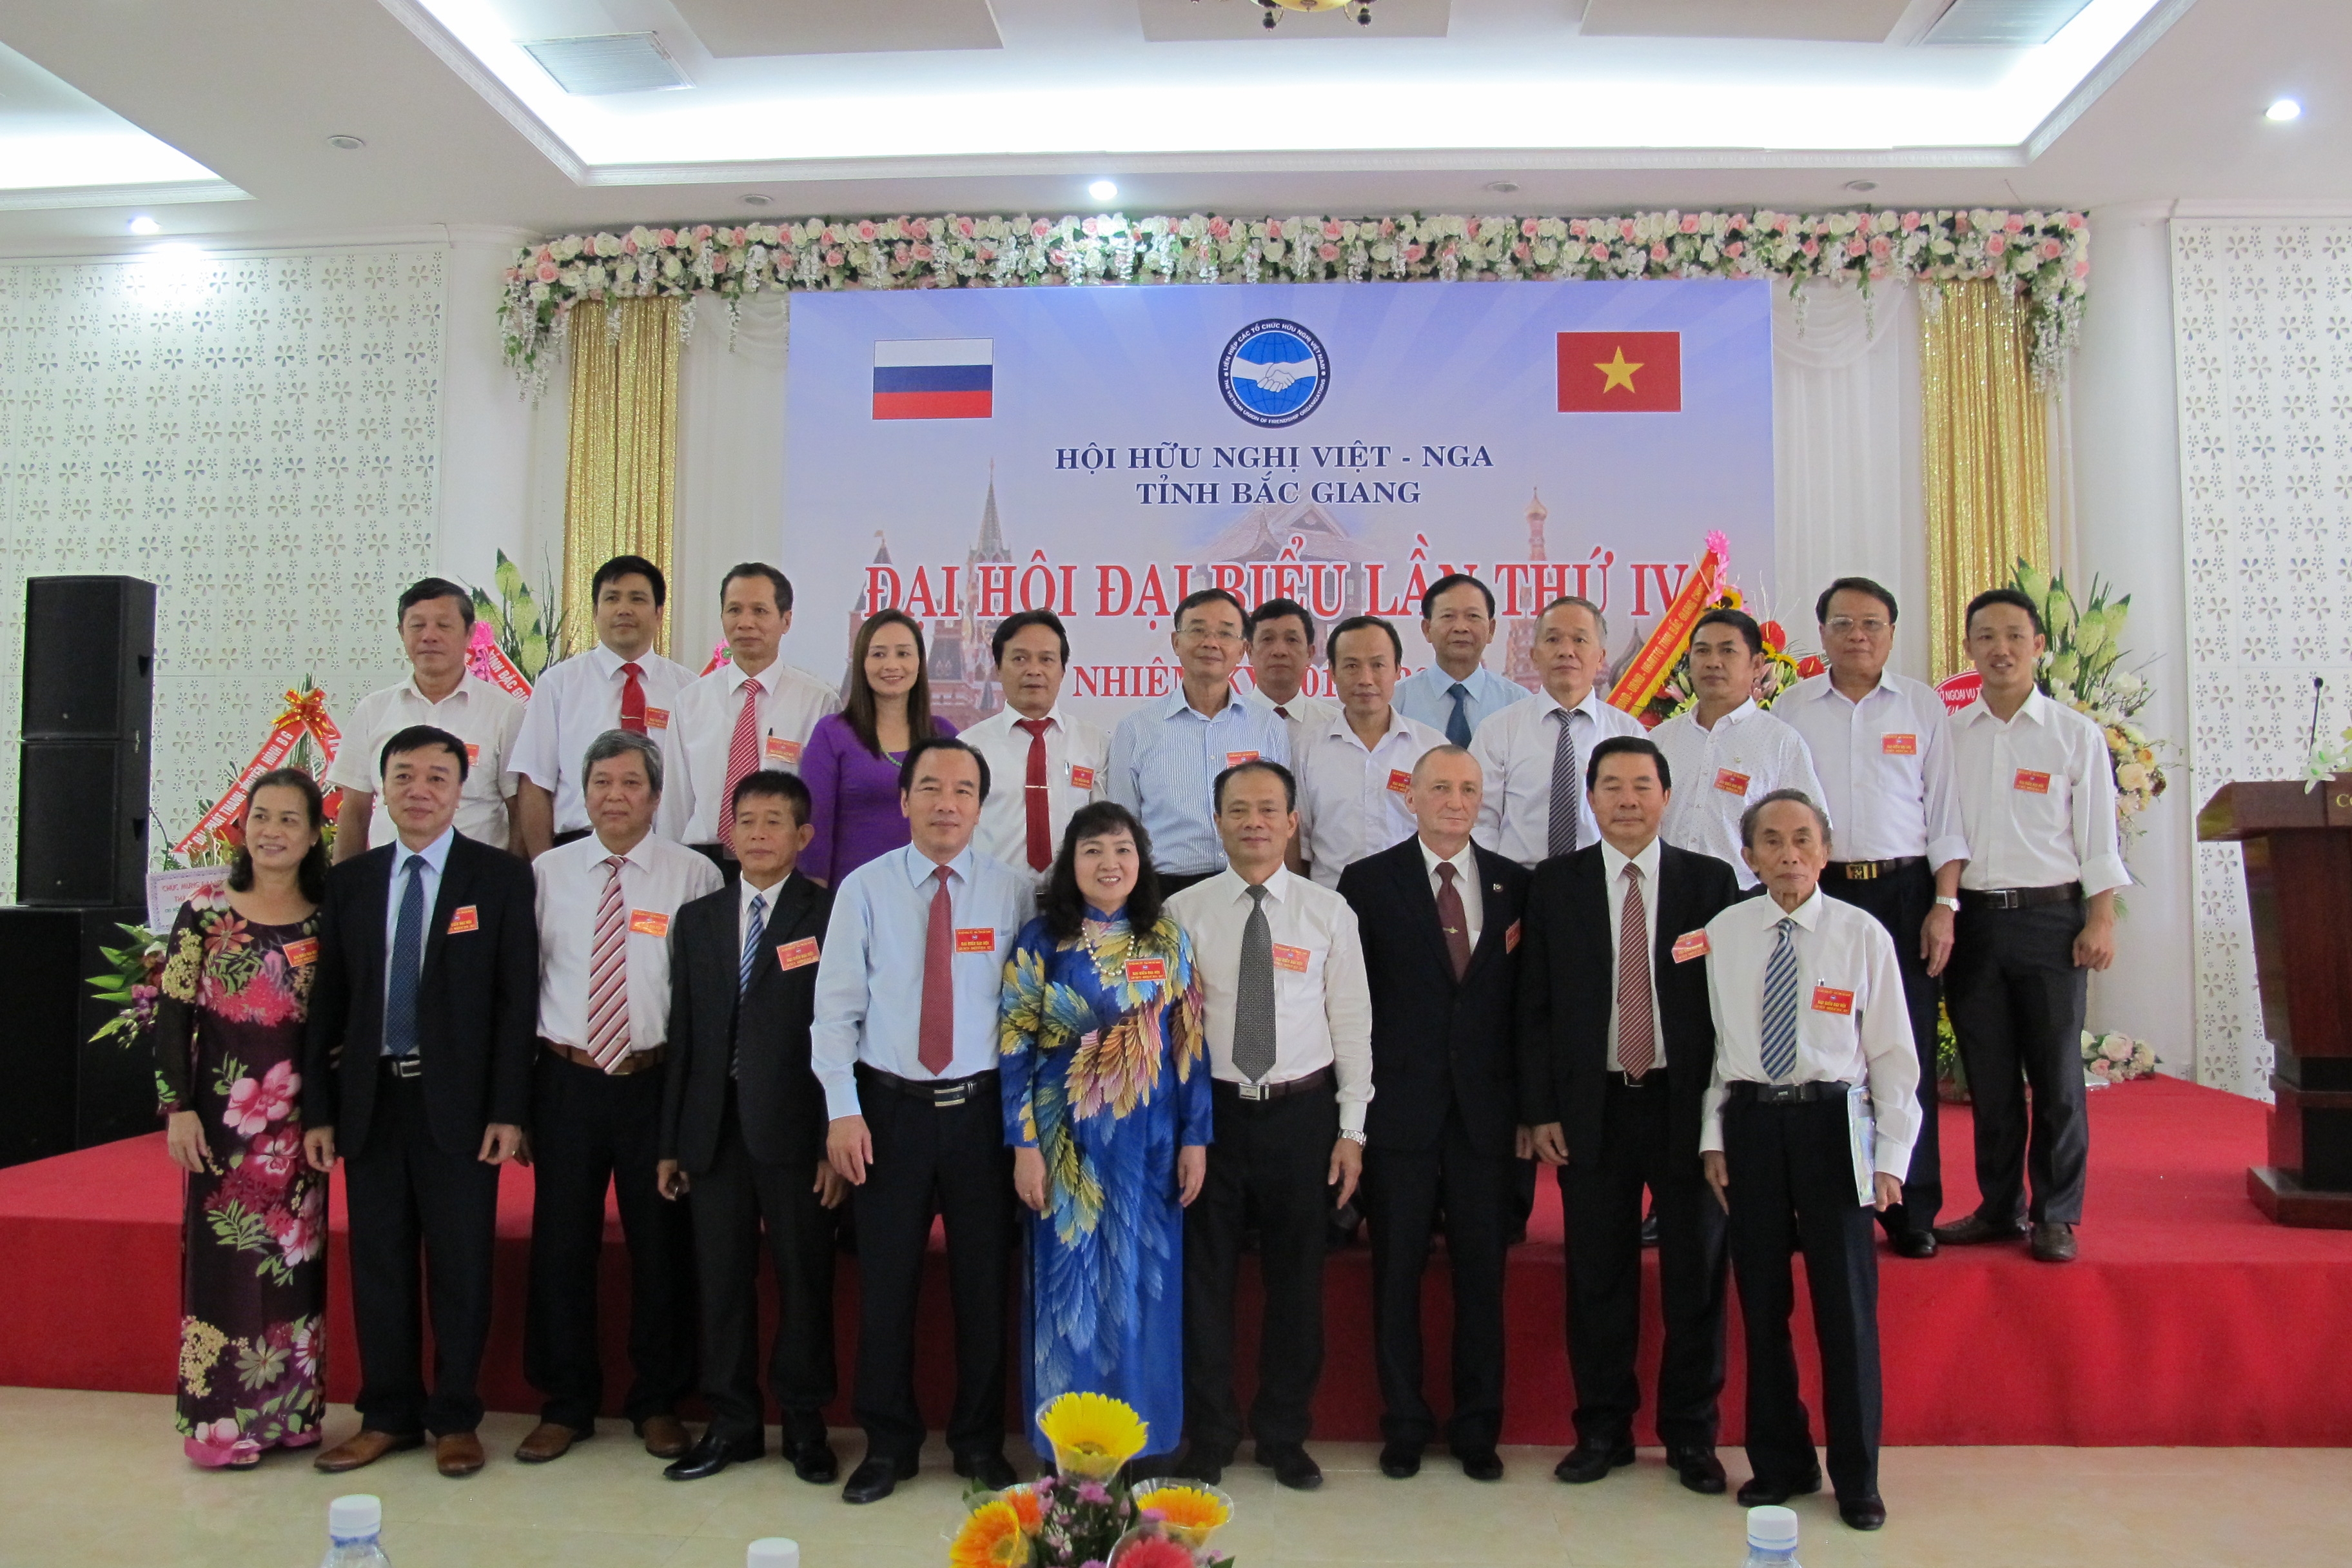 Đại hội Hội hữu nghị Việt – Nga tỉnh Bắc Giang, nhiệm kỳ 2016-2021.